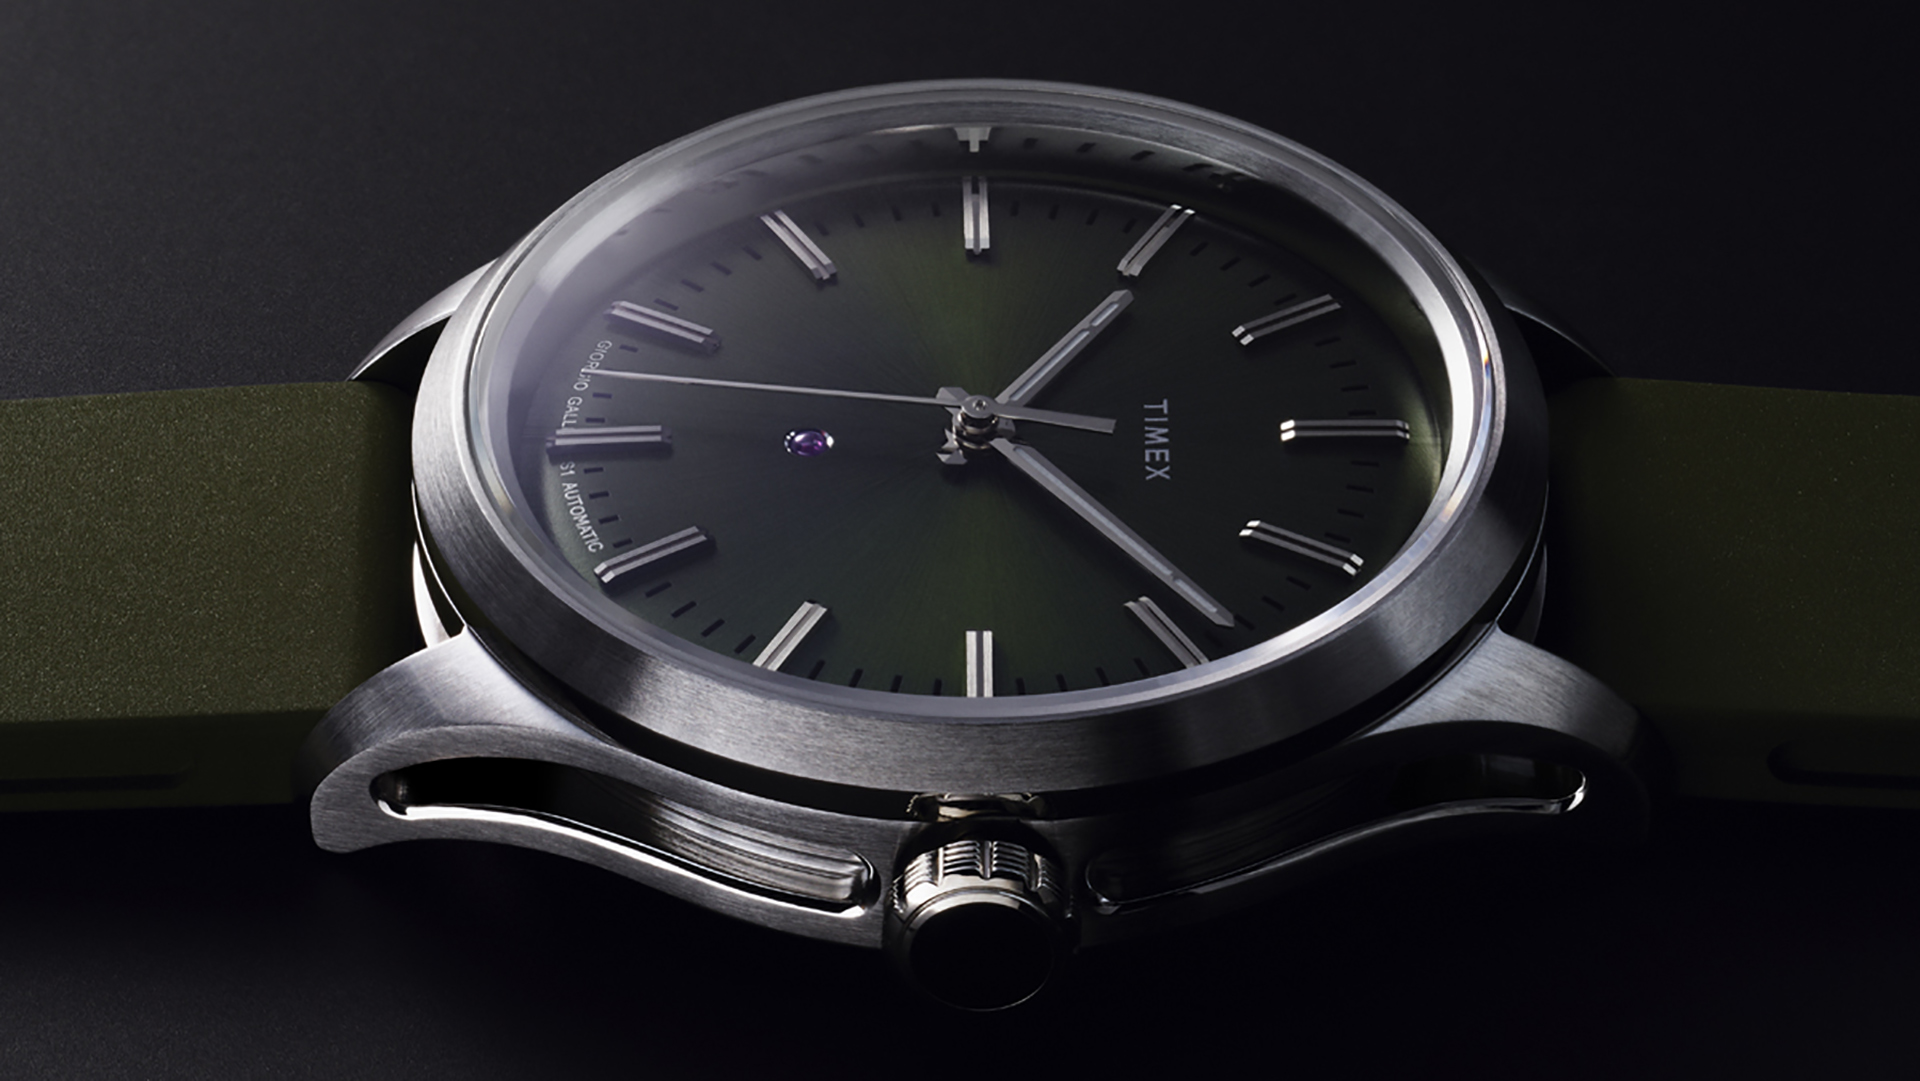 Timex Giorgio Galli S1 Automatic 38mm: Rẻ bền đẹp cho anh em cổ tay bé, giá